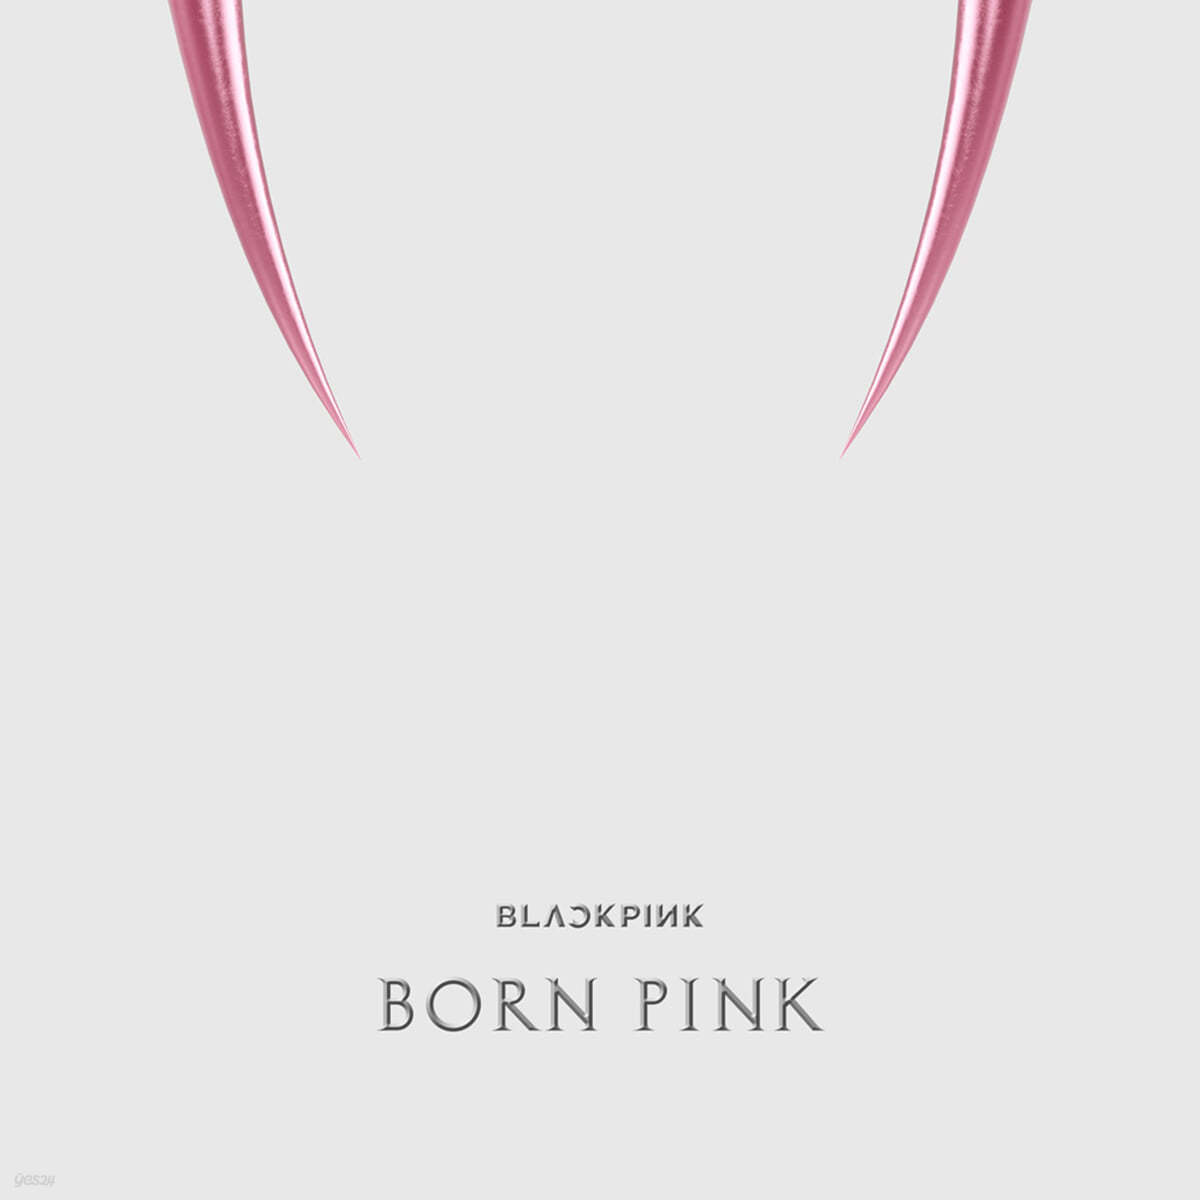 블랙핑크 (BLACKPINK) - BLACKPINK 2nd ALBUM [BORN PINK] KiT ALBUM